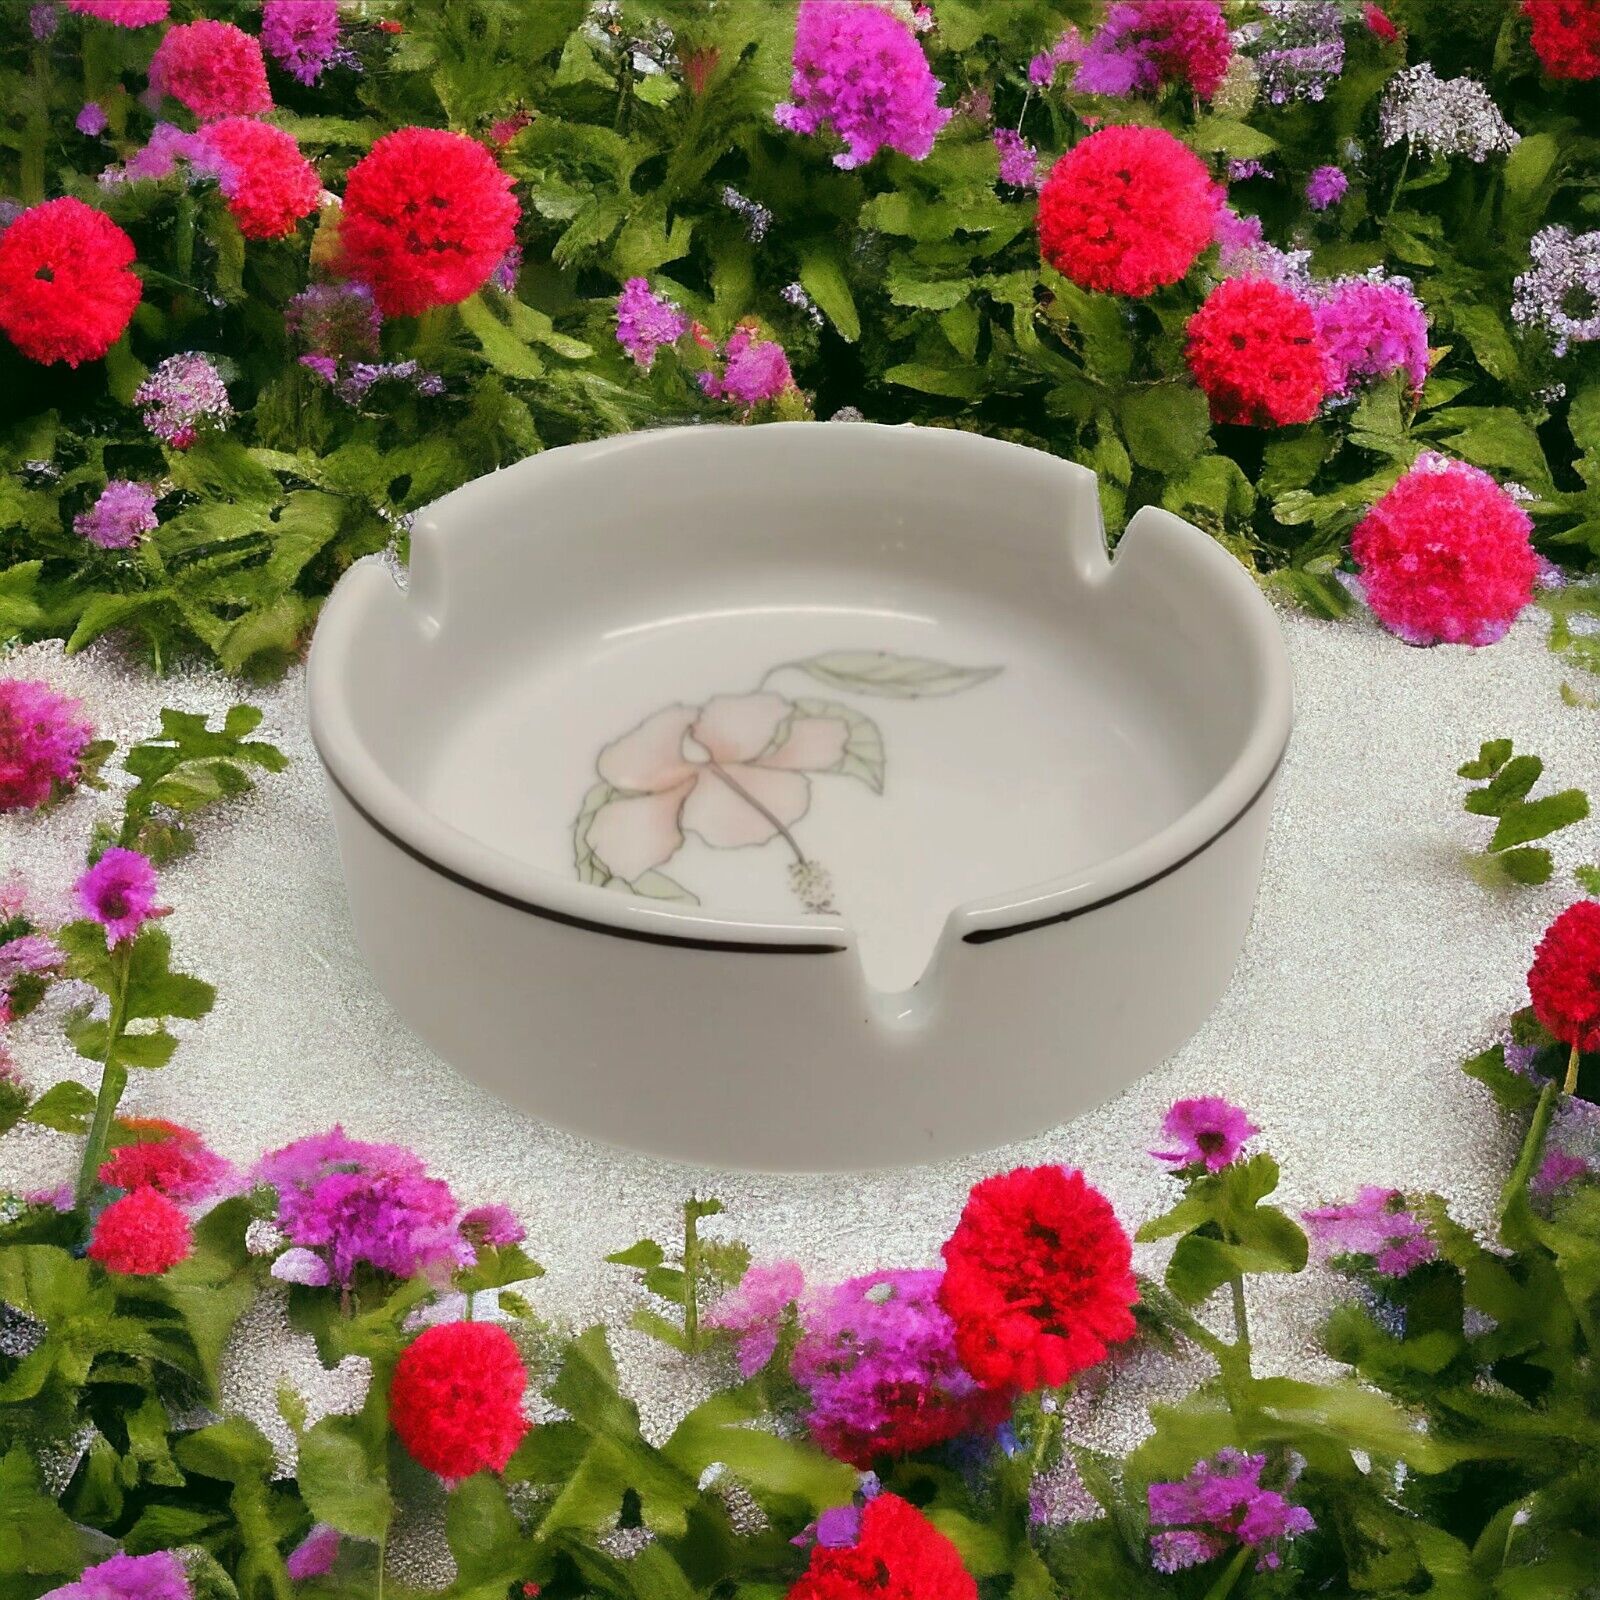 Pillivuyt Porcelain Ashtray France Vintage Floral Round Depuis Pink White I 963